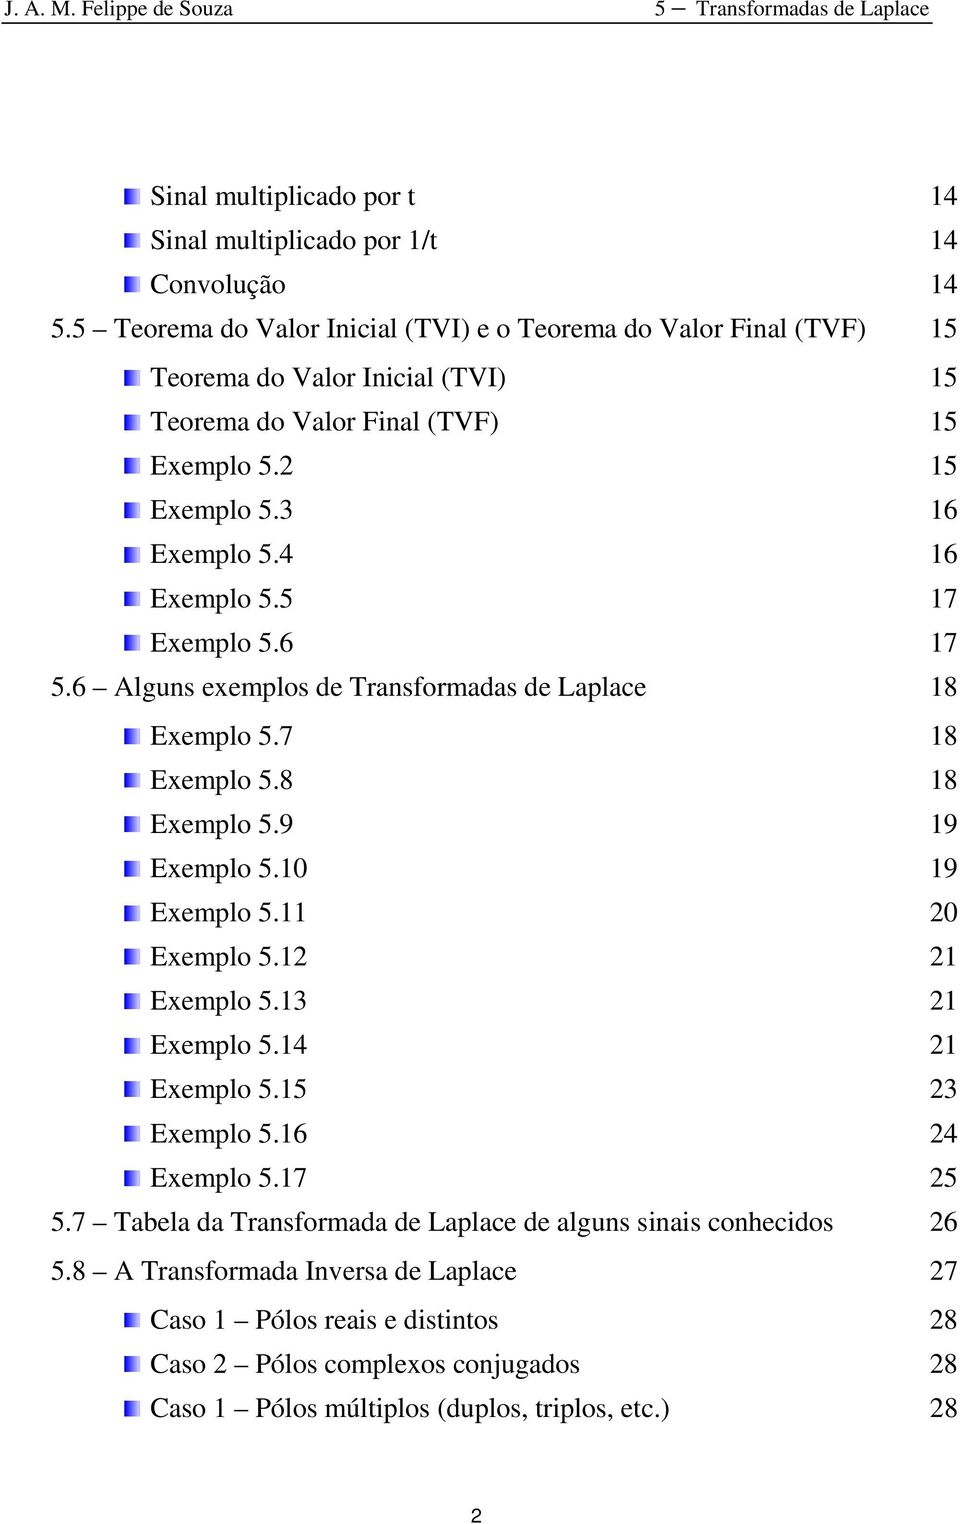 4 16 Exemplo 5.5 17 Exemplo 5.6 17 5.6 Alguns exemplos de Transformadas de Laplace 18 Exemplo 5.7 18 Exemplo 5.8 18 Exemplo 5.9 19 Exemplo 5.10 19 Exemplo 5.11 20 Exemplo 5.